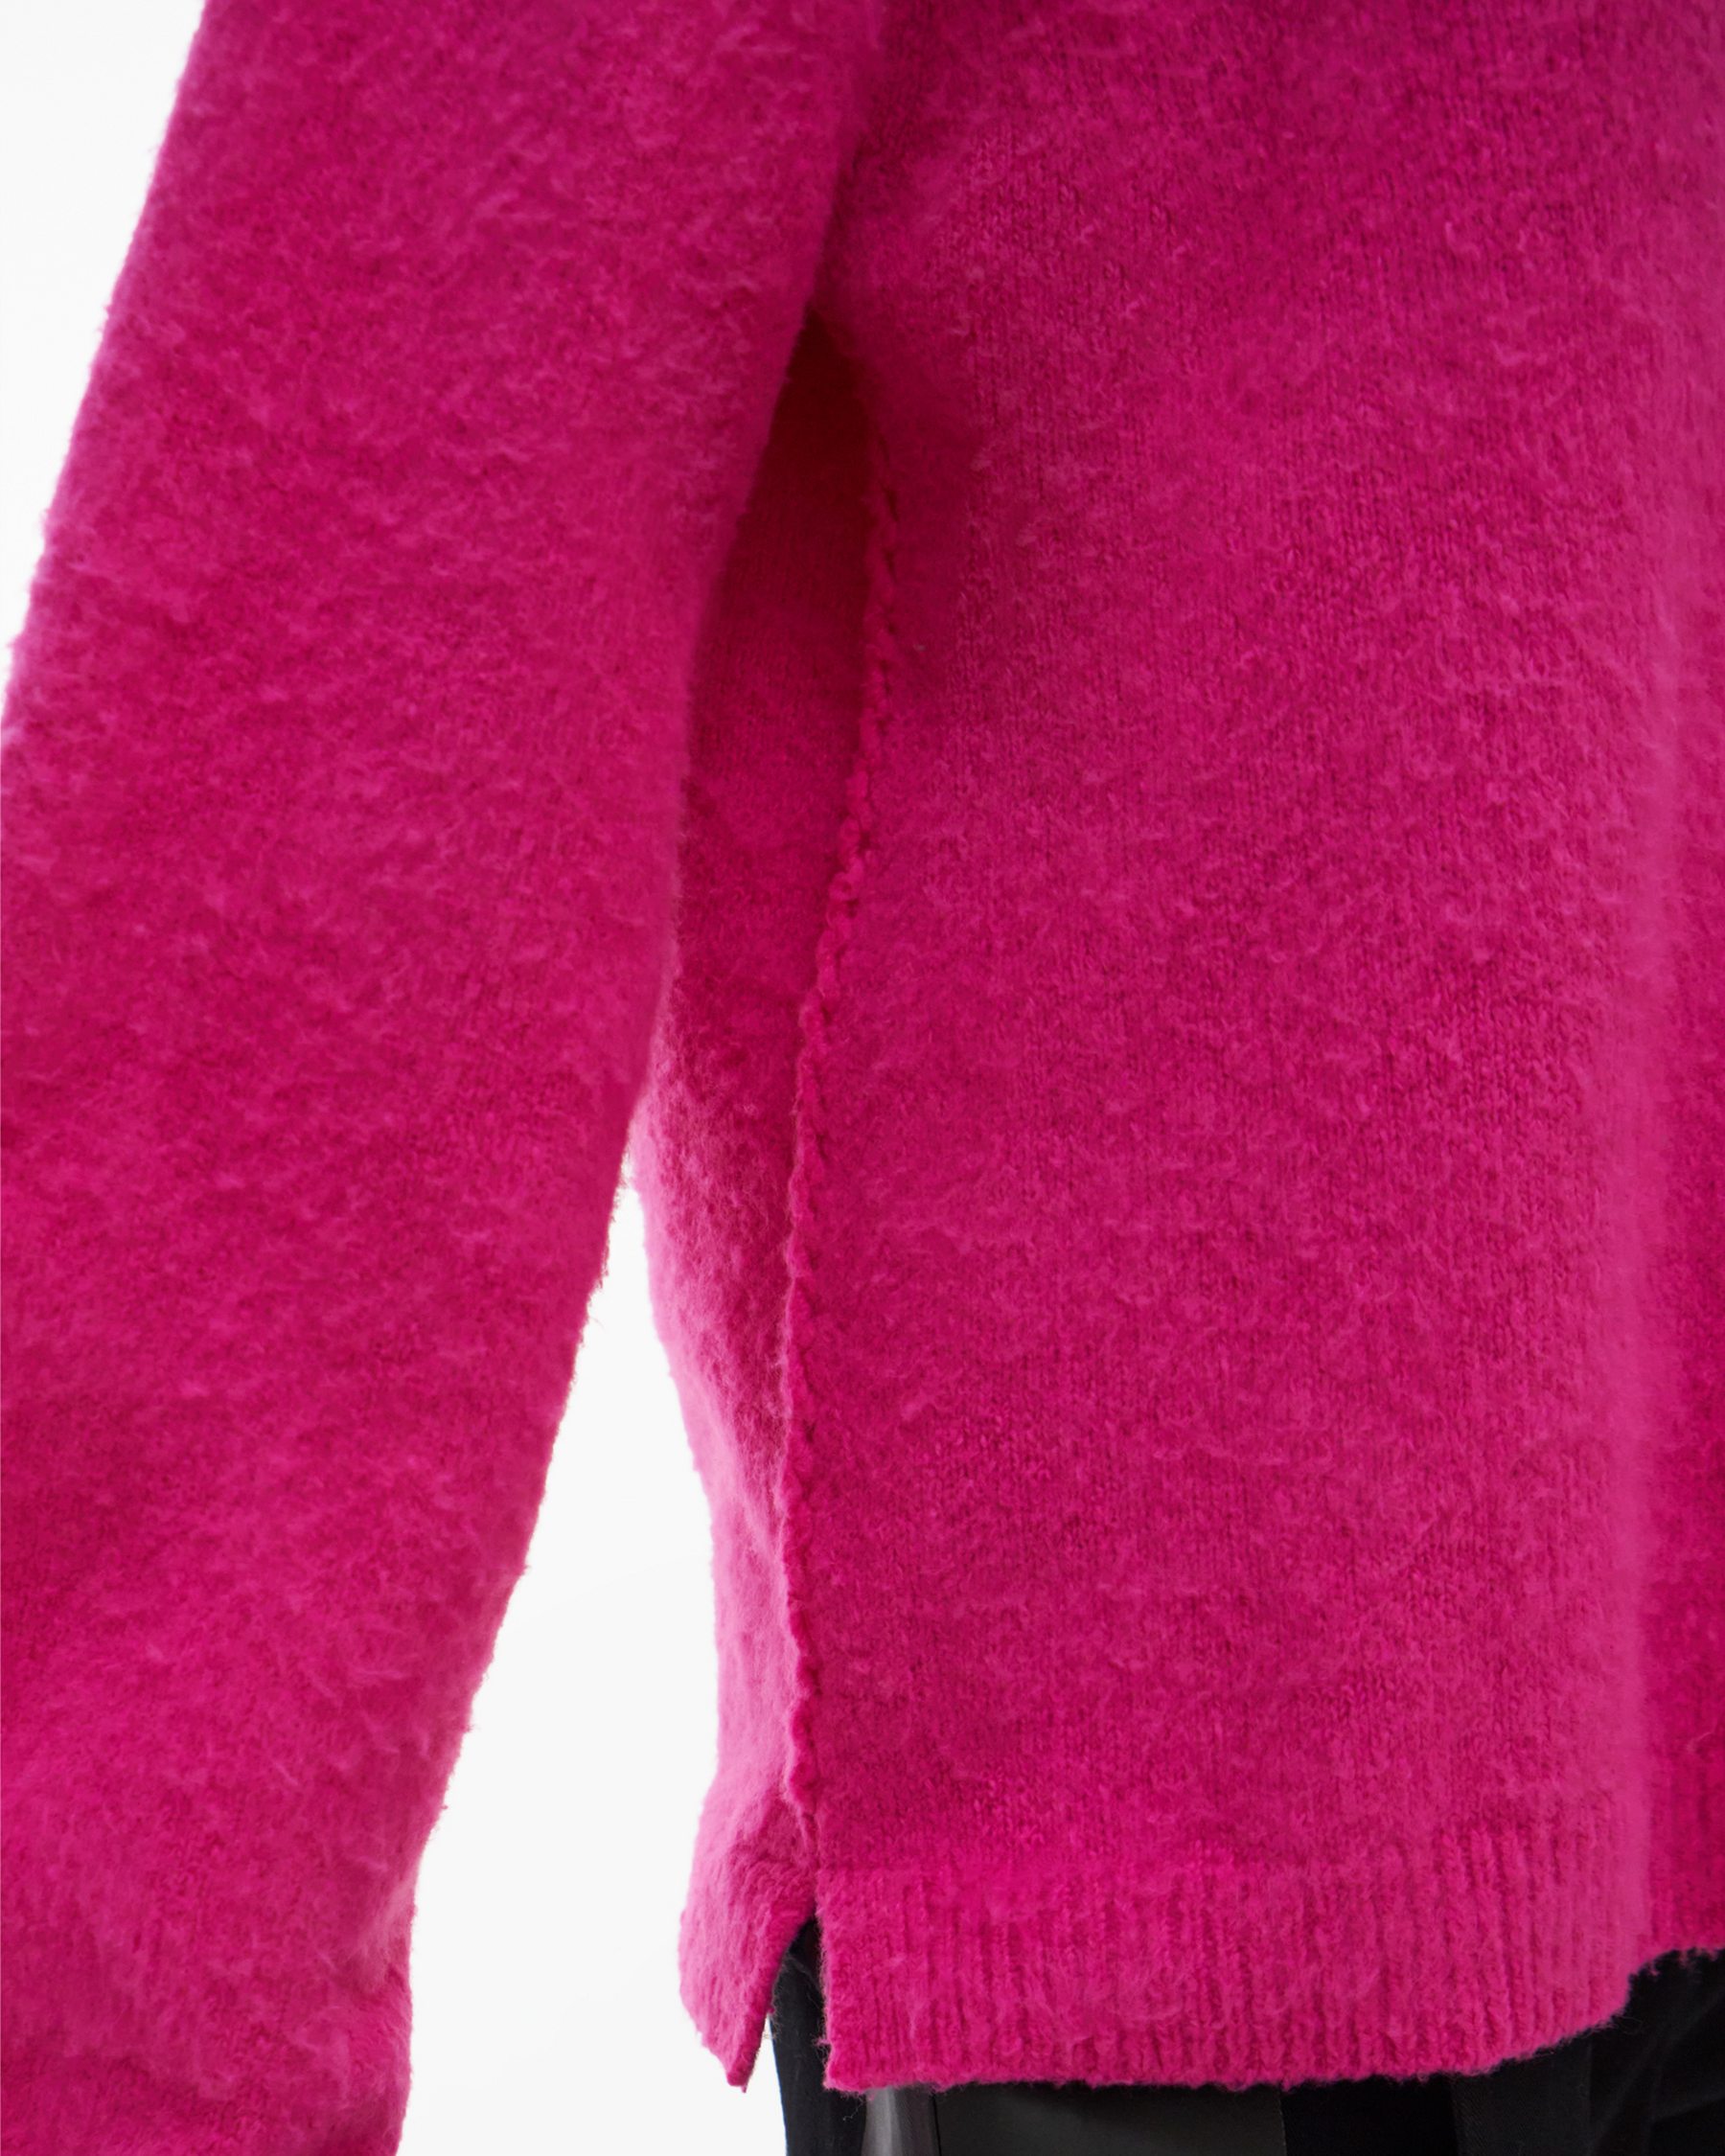 Helmut Lang Brushed Double V-Neck Sweater | WWW.HELMUTLANG.COM 